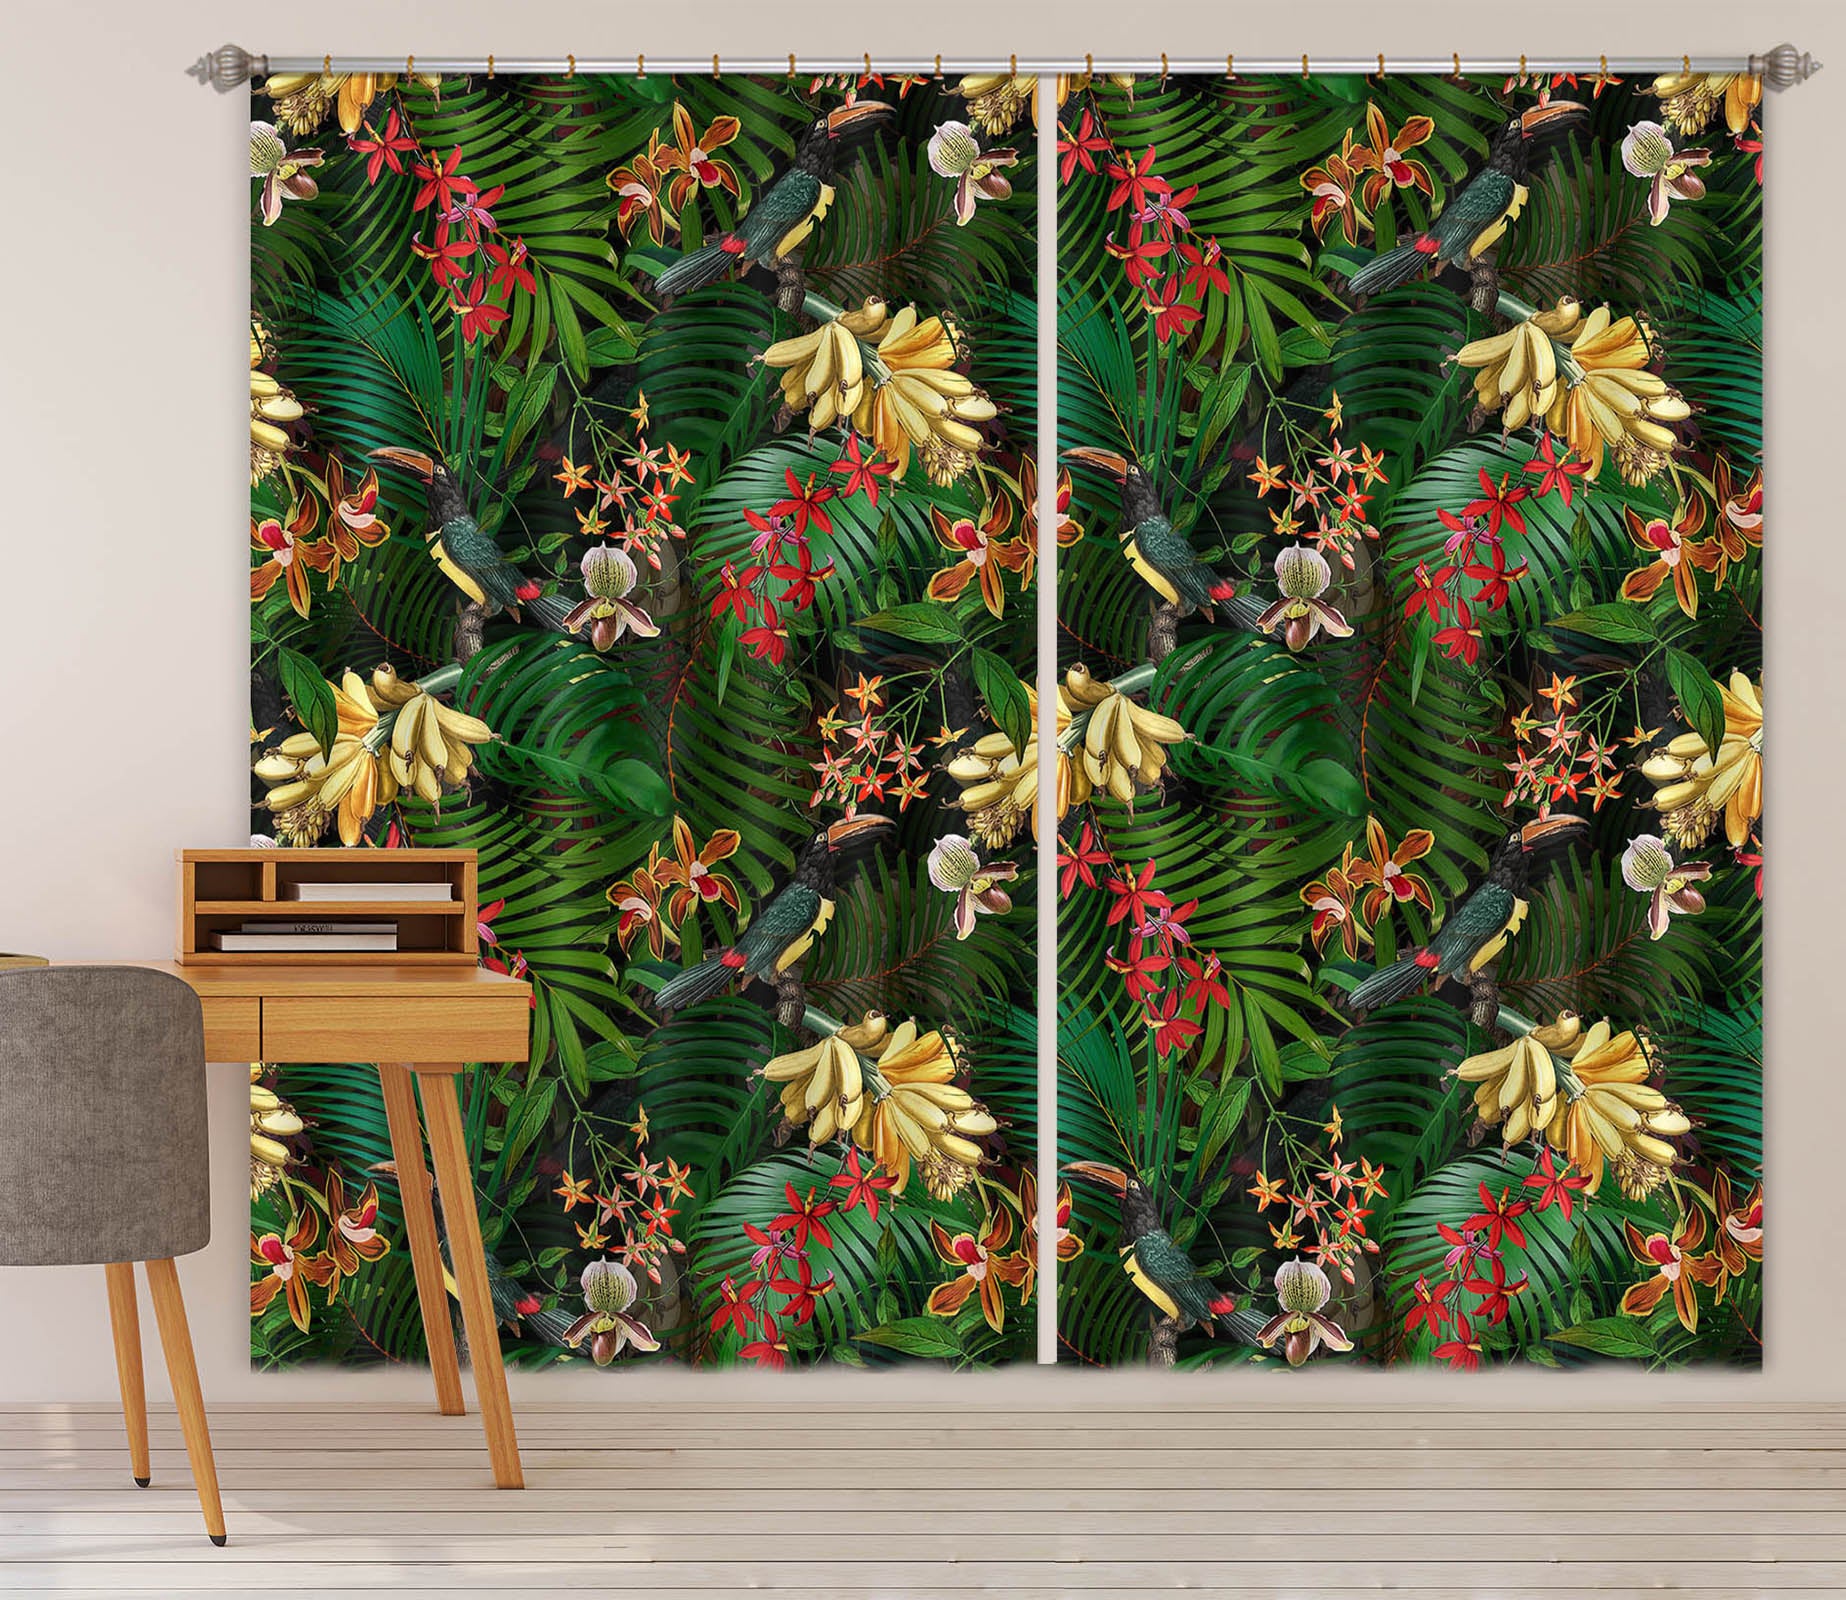 3D Painted Chrysanthemum 158 Uta Naumann Curtain Curtains Drapes